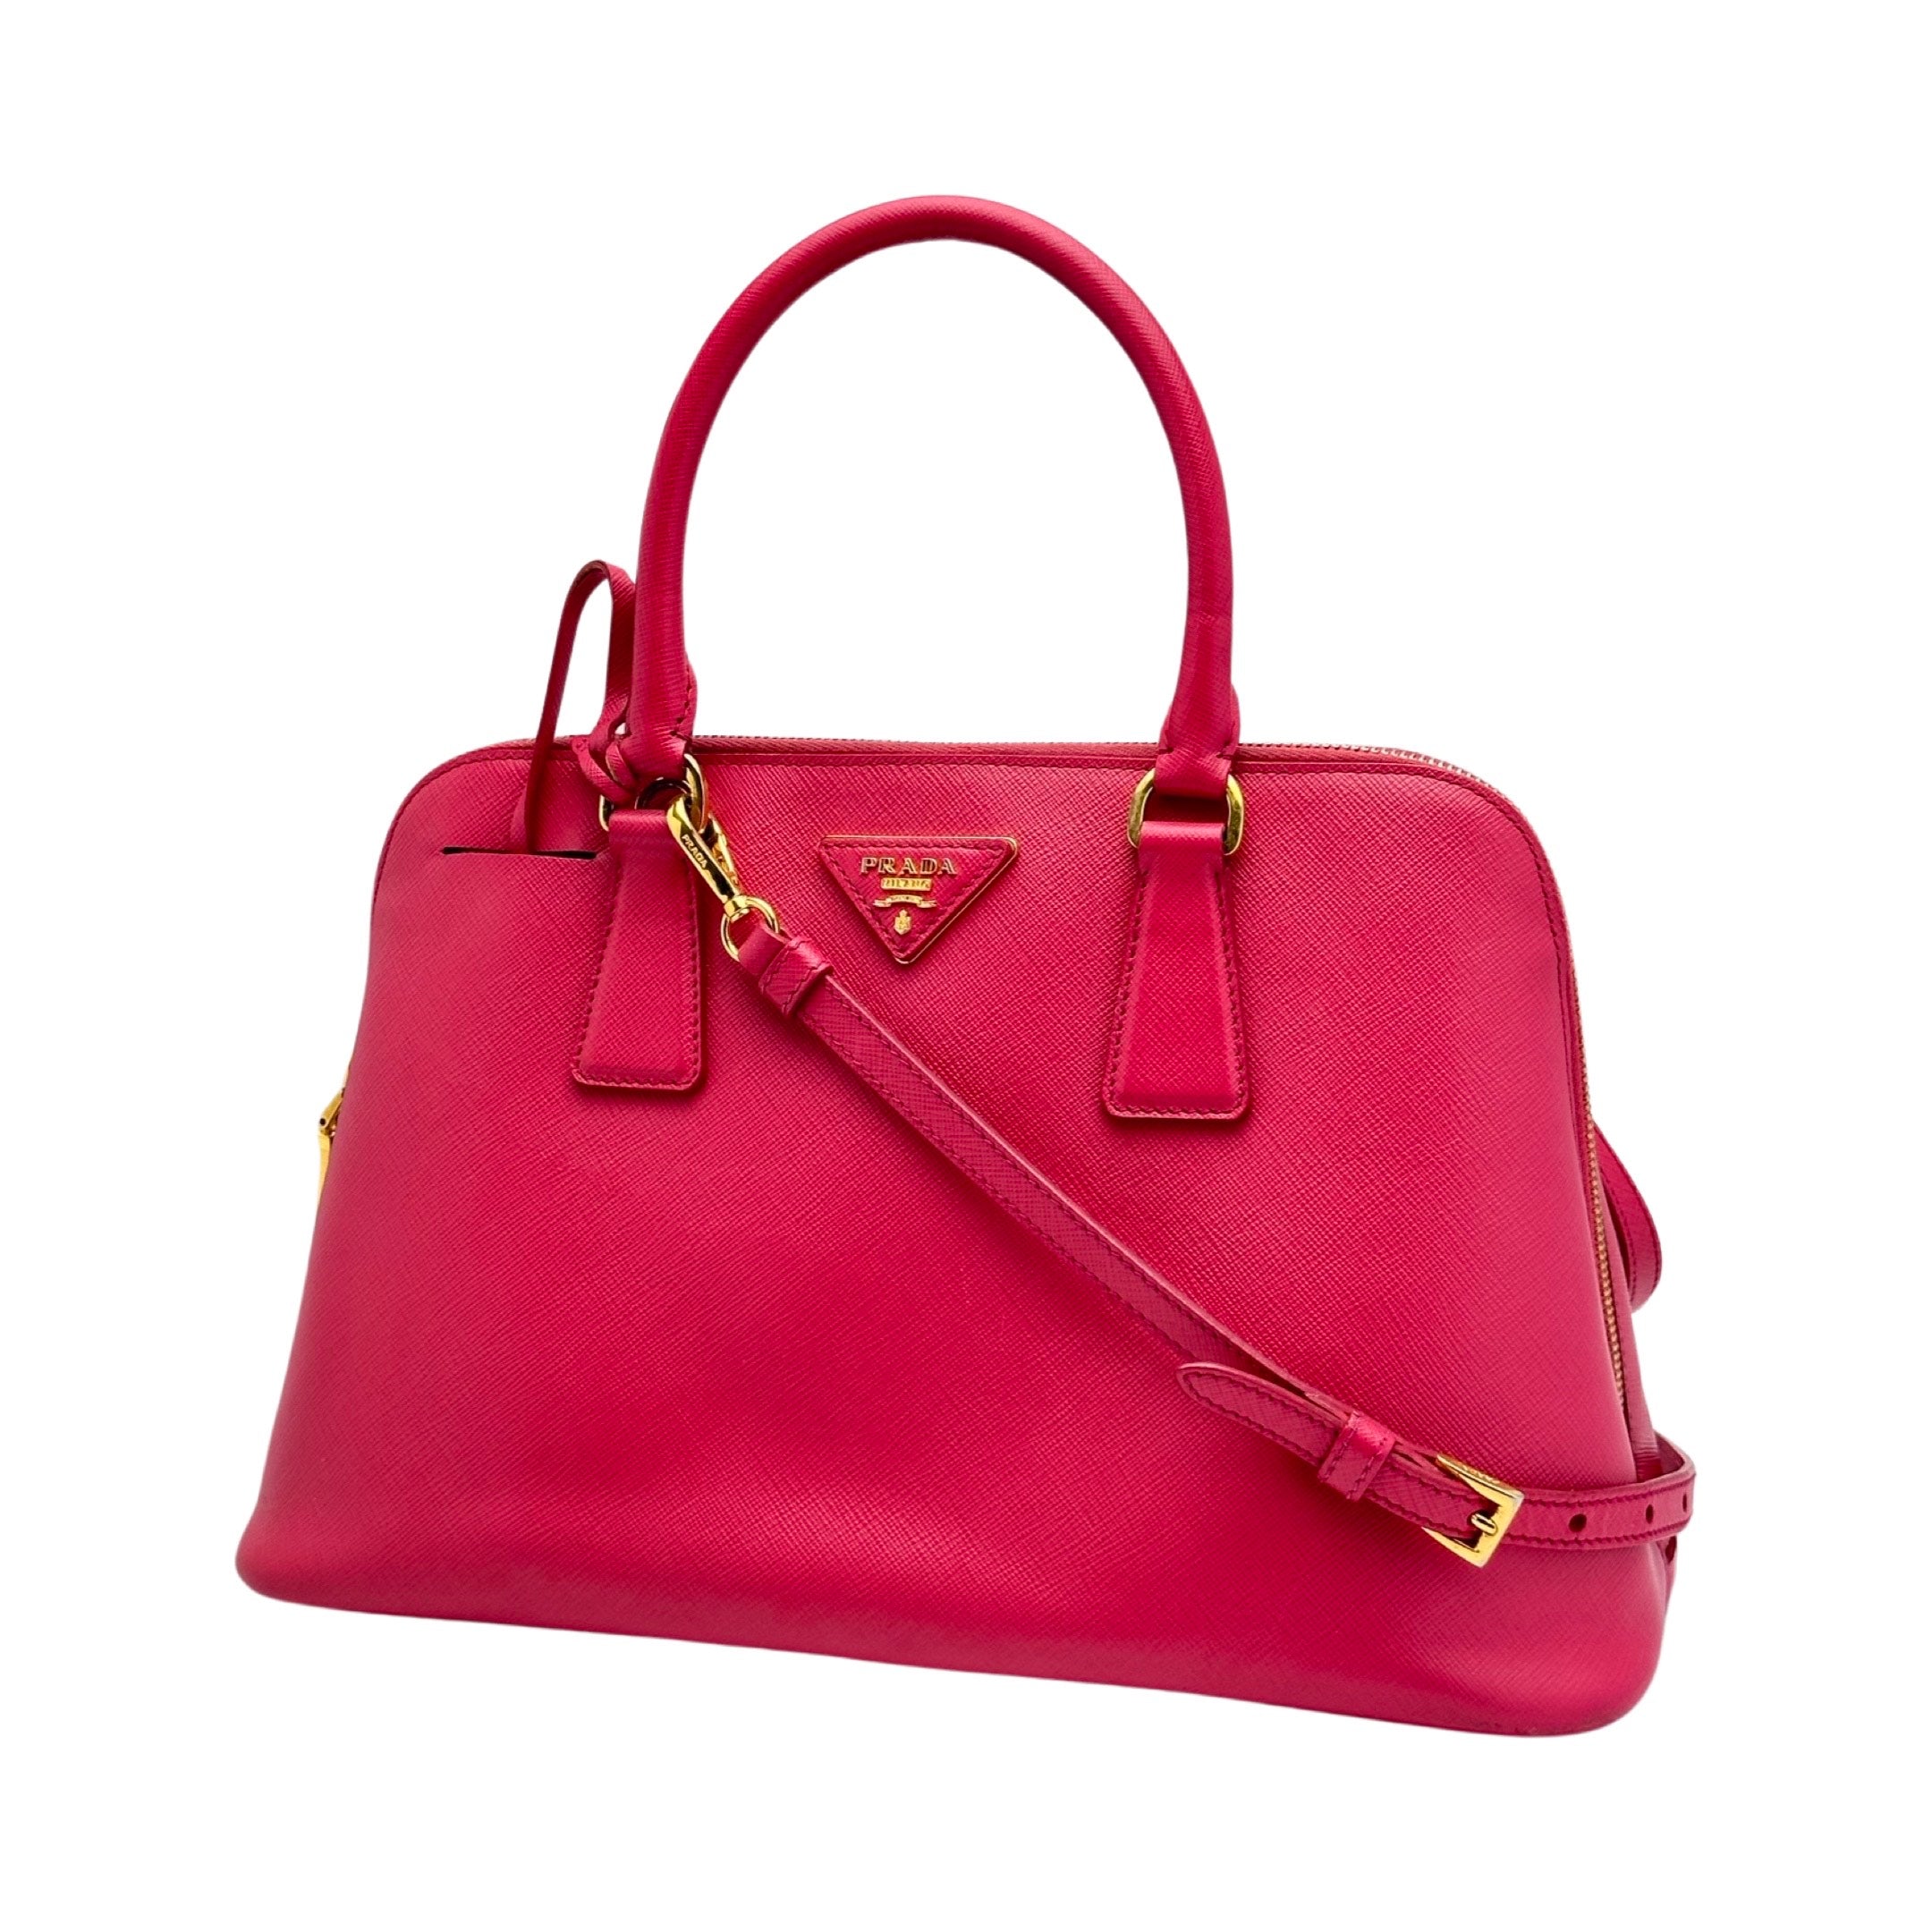 PRADA Saffiano Leather Promenade Handbag